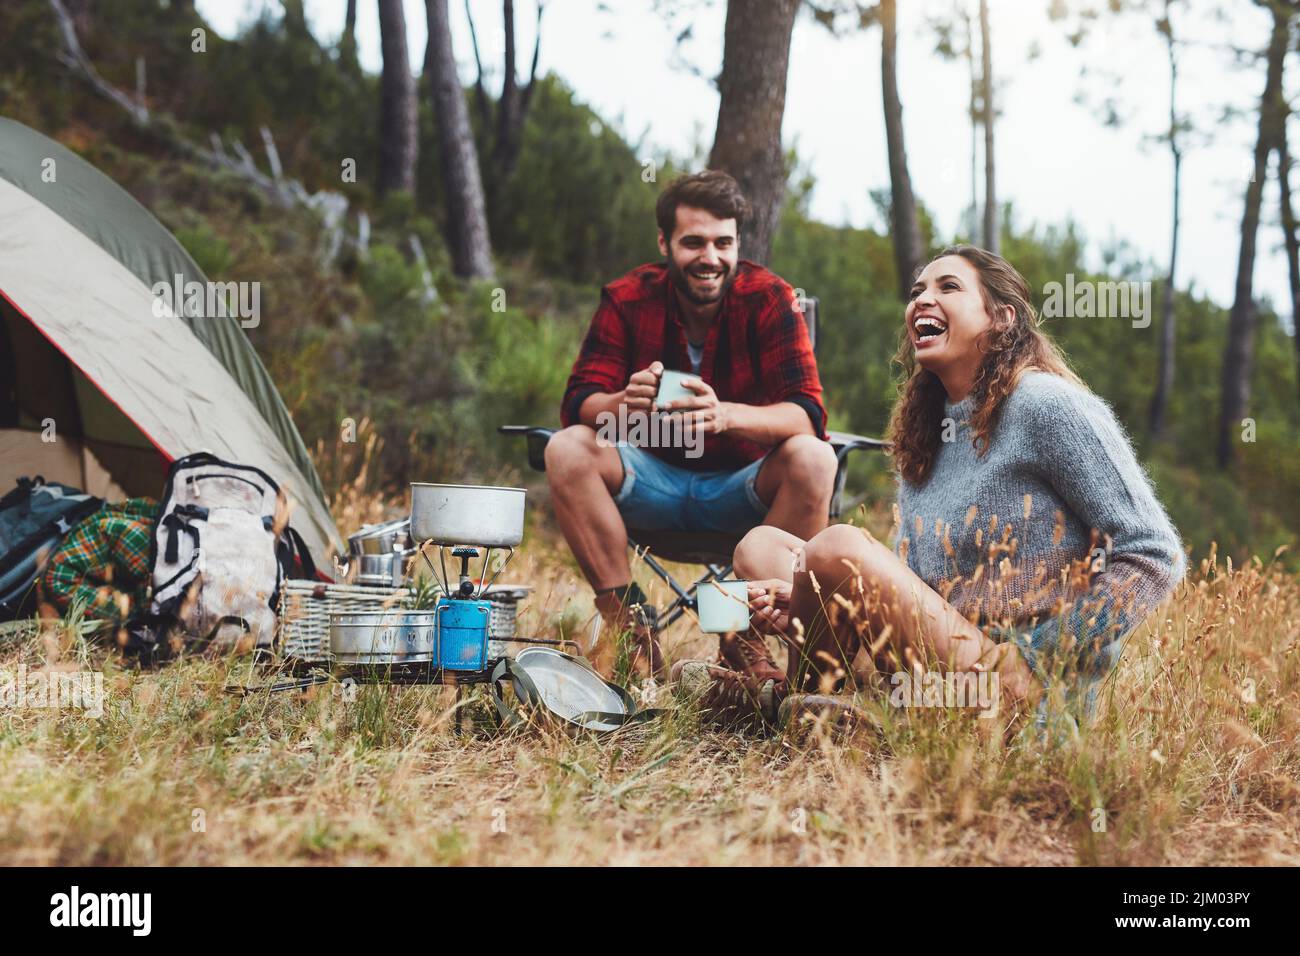 Feliz pareja joven riendo juntos mientras se sentaban fuera de su tienda de camping. Alegre pareja joven disfrutando de unas vacaciones de camping. Foto de stock